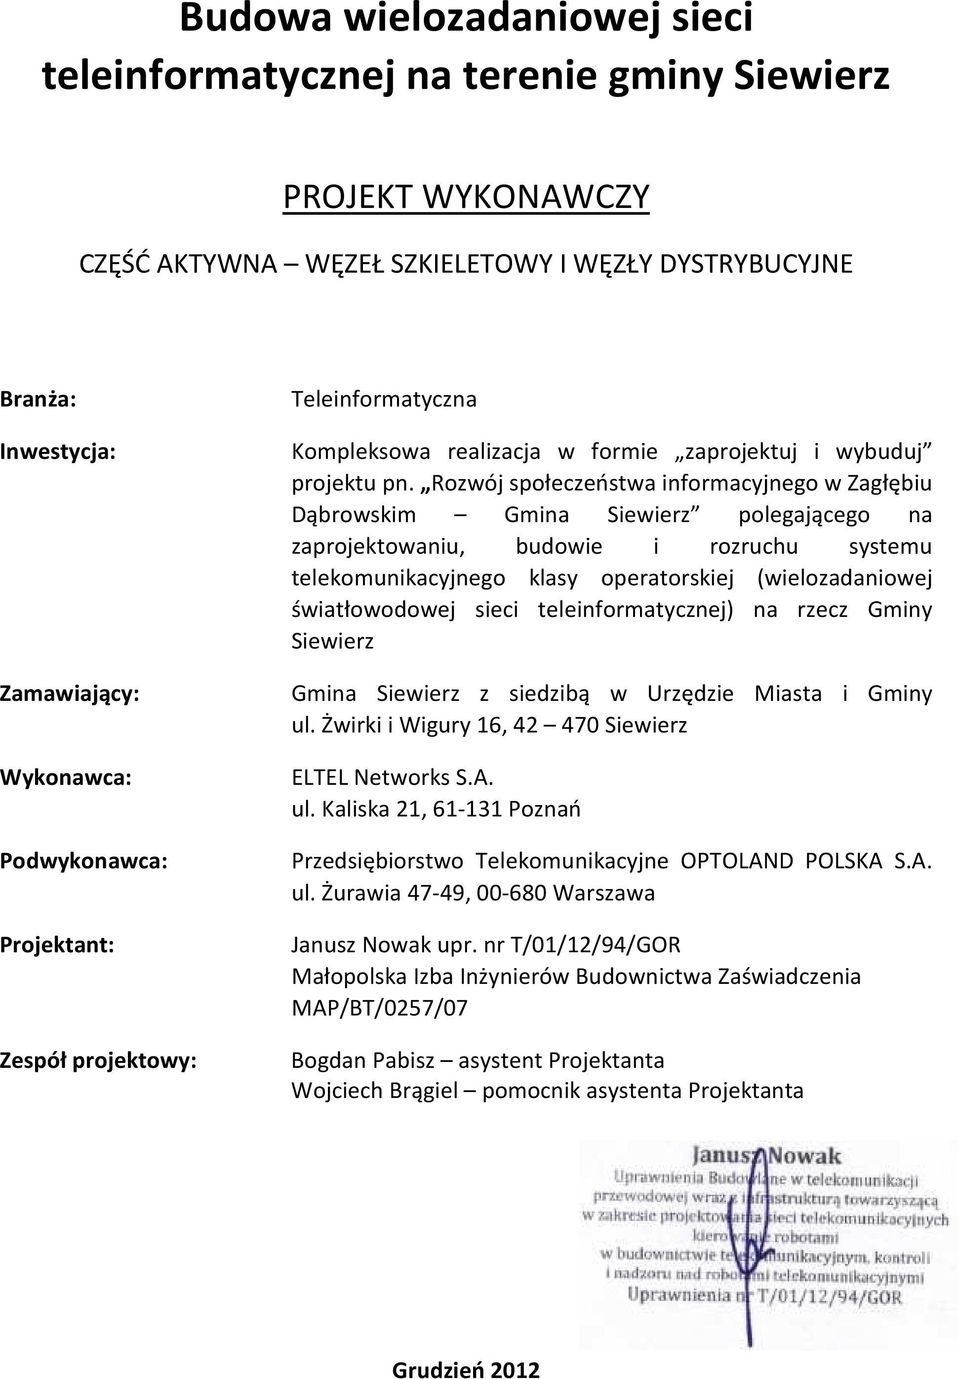 Rozwój społeczeństwa informacyjnego w Zagłębiu Dąbrowskim Gmina Siewierz polegającego na zaprojektowaniu, budowie i rozruchu systemu telekomunikacyjnego klasy operatorskiej (wielozadaniowej